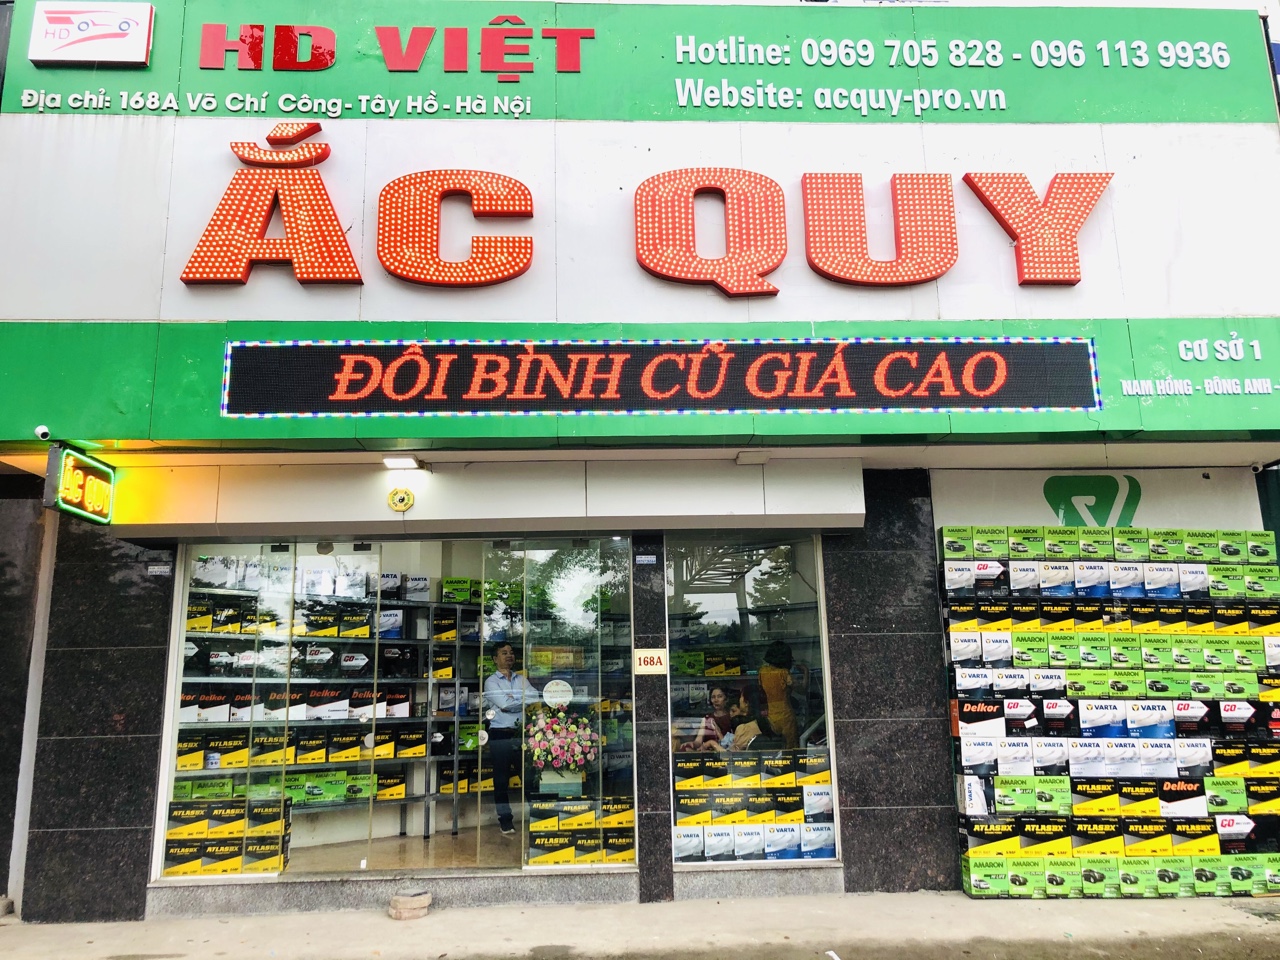 HD Việt Đại lý ắc quy Varta chính hãng giá rẻ tại Hà Nội